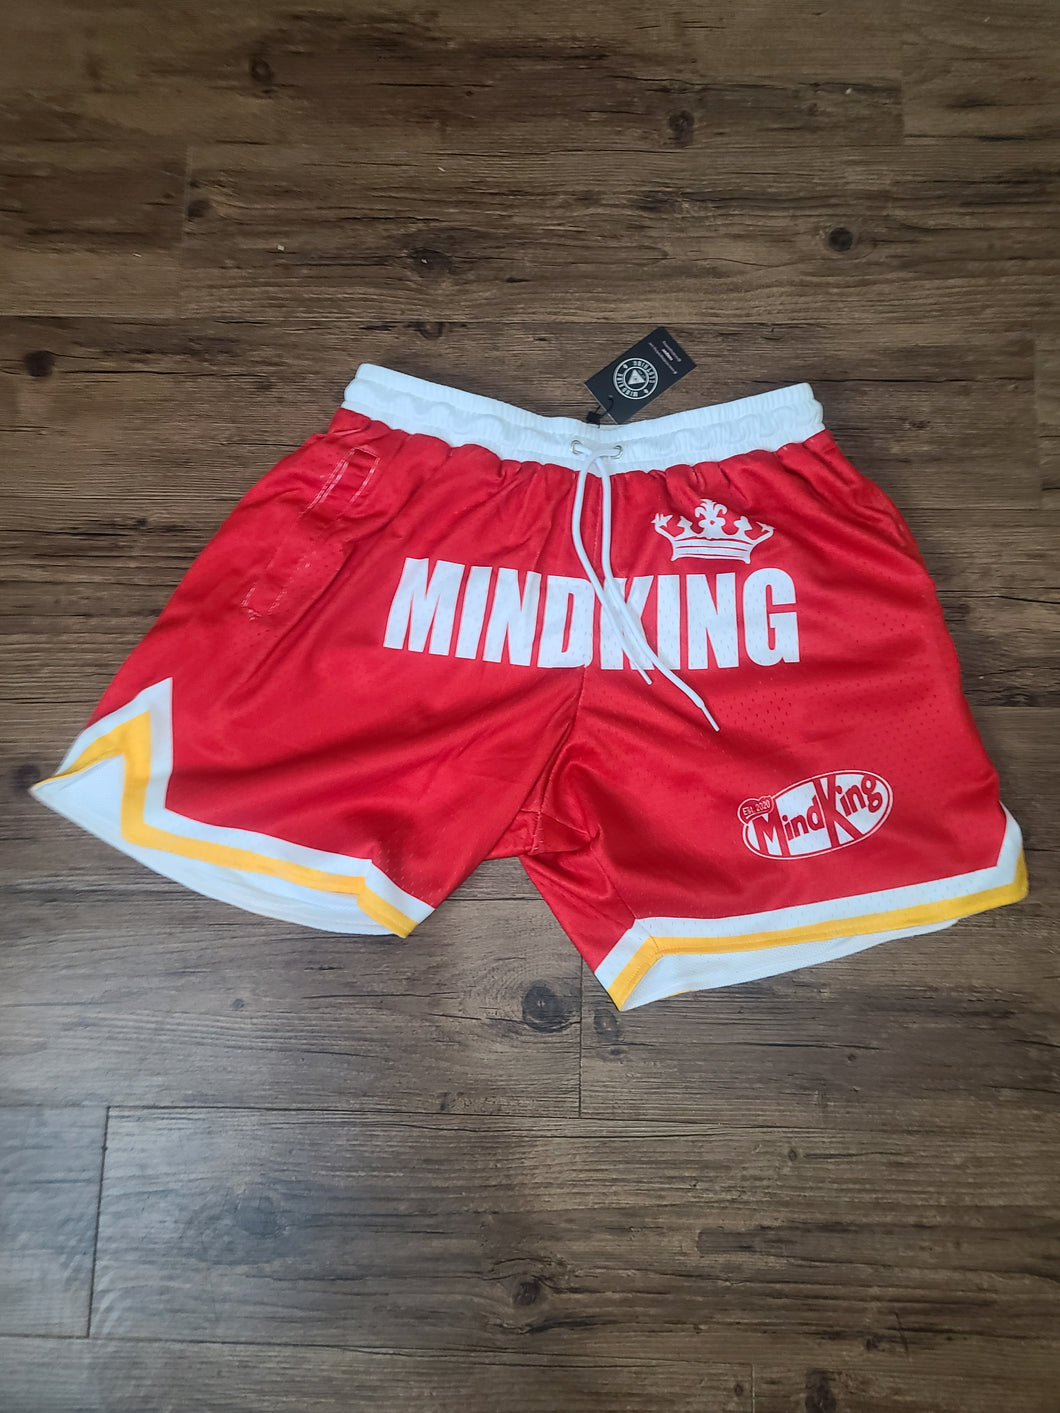 Houston RED MindKing shorts